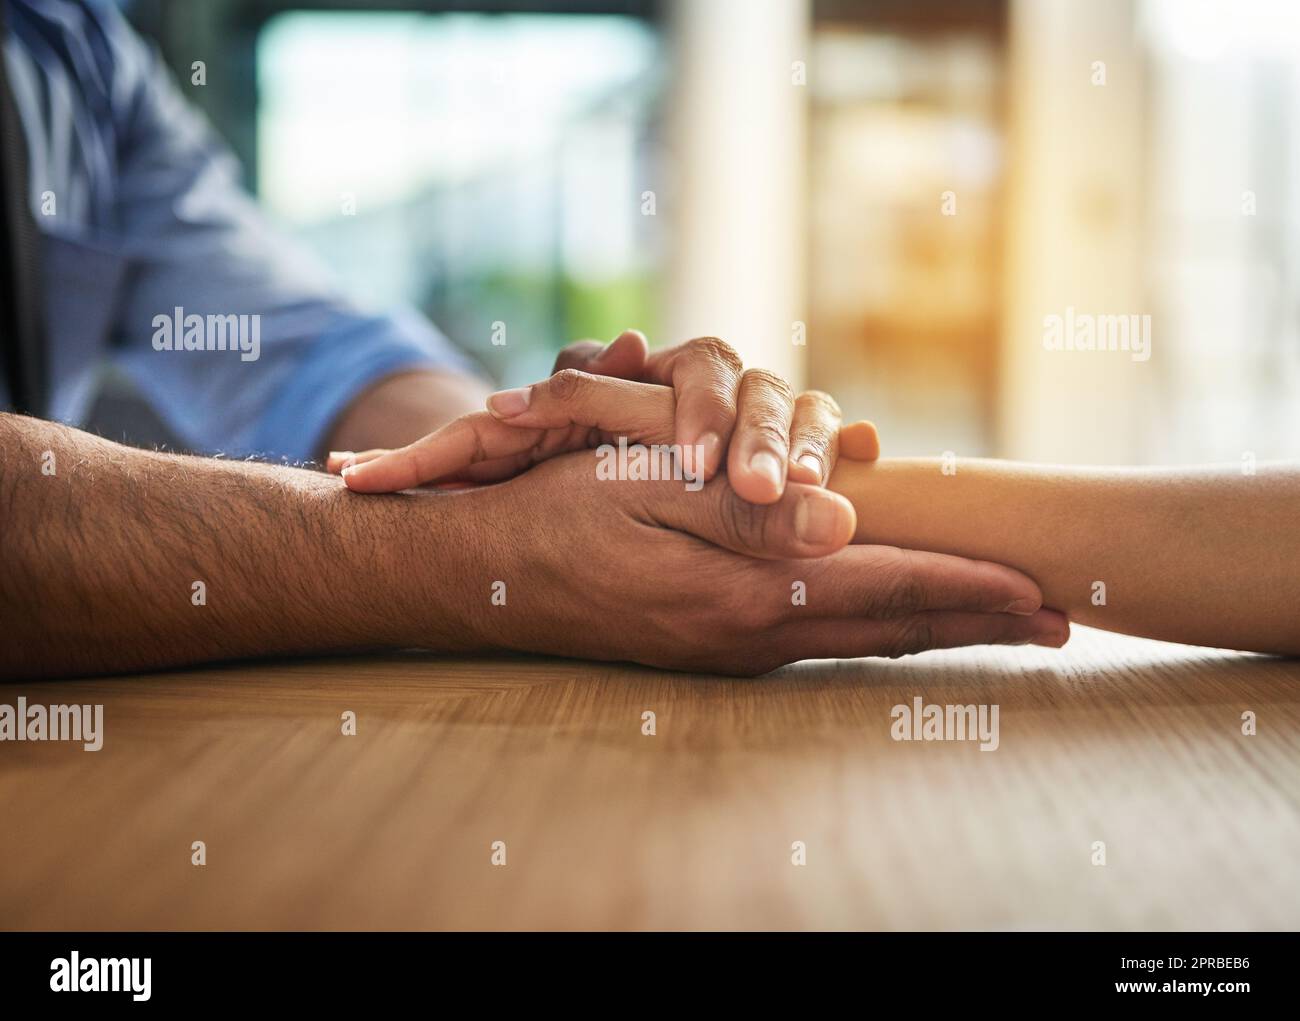 Mains tenant ensemble avec amour, soutien et soin dans un moment de contact et de collage. Gros plan d'une main étroite et aimante entre deux personnes ensemble. Geste réconfortant de sympathie et de communauté Banque D'Images